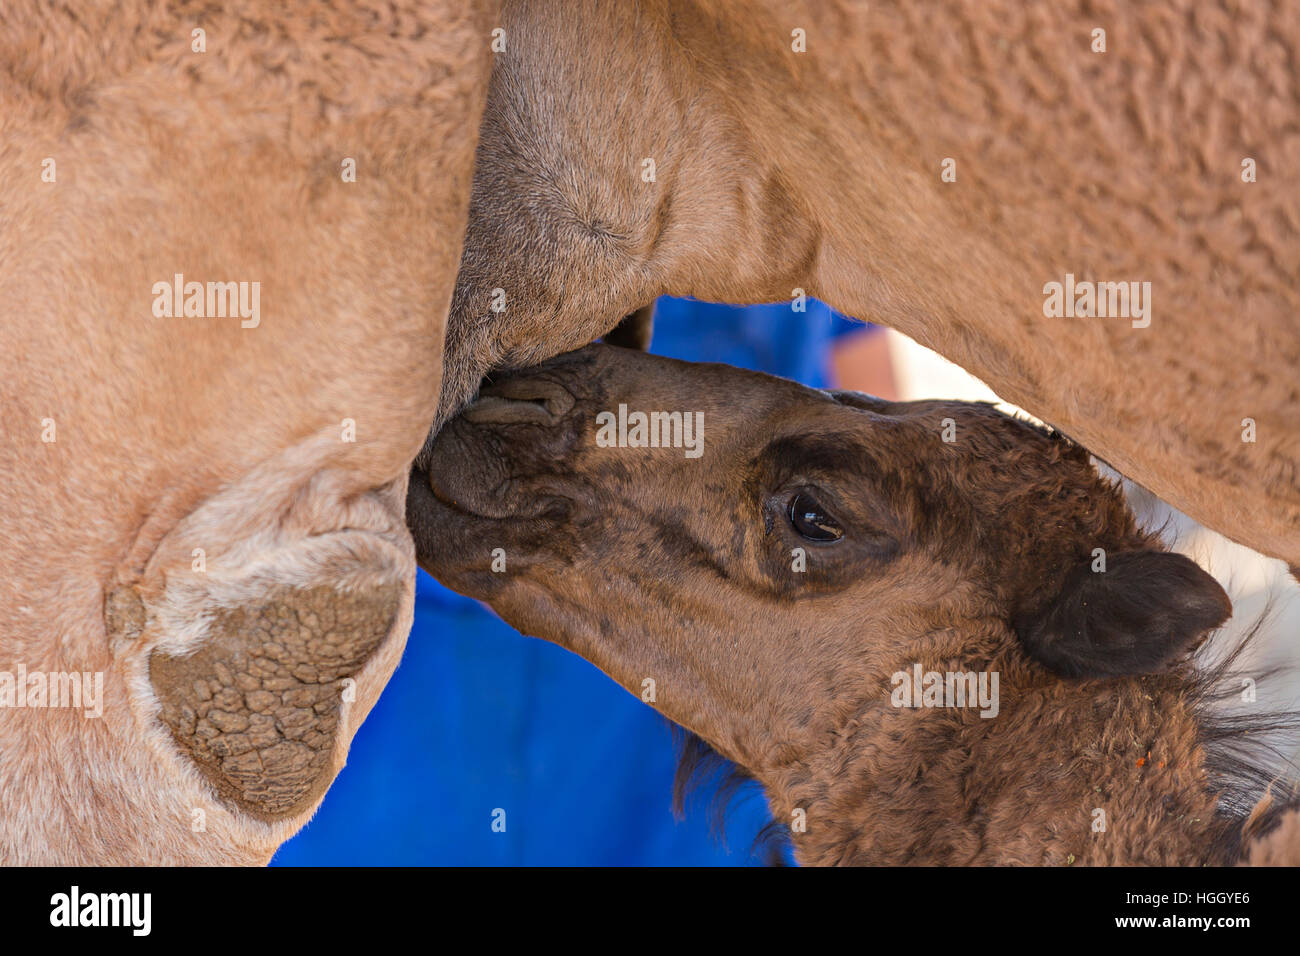 Baby camel suckles its mother in Turkestan, Kazakhstan. Stock Photo